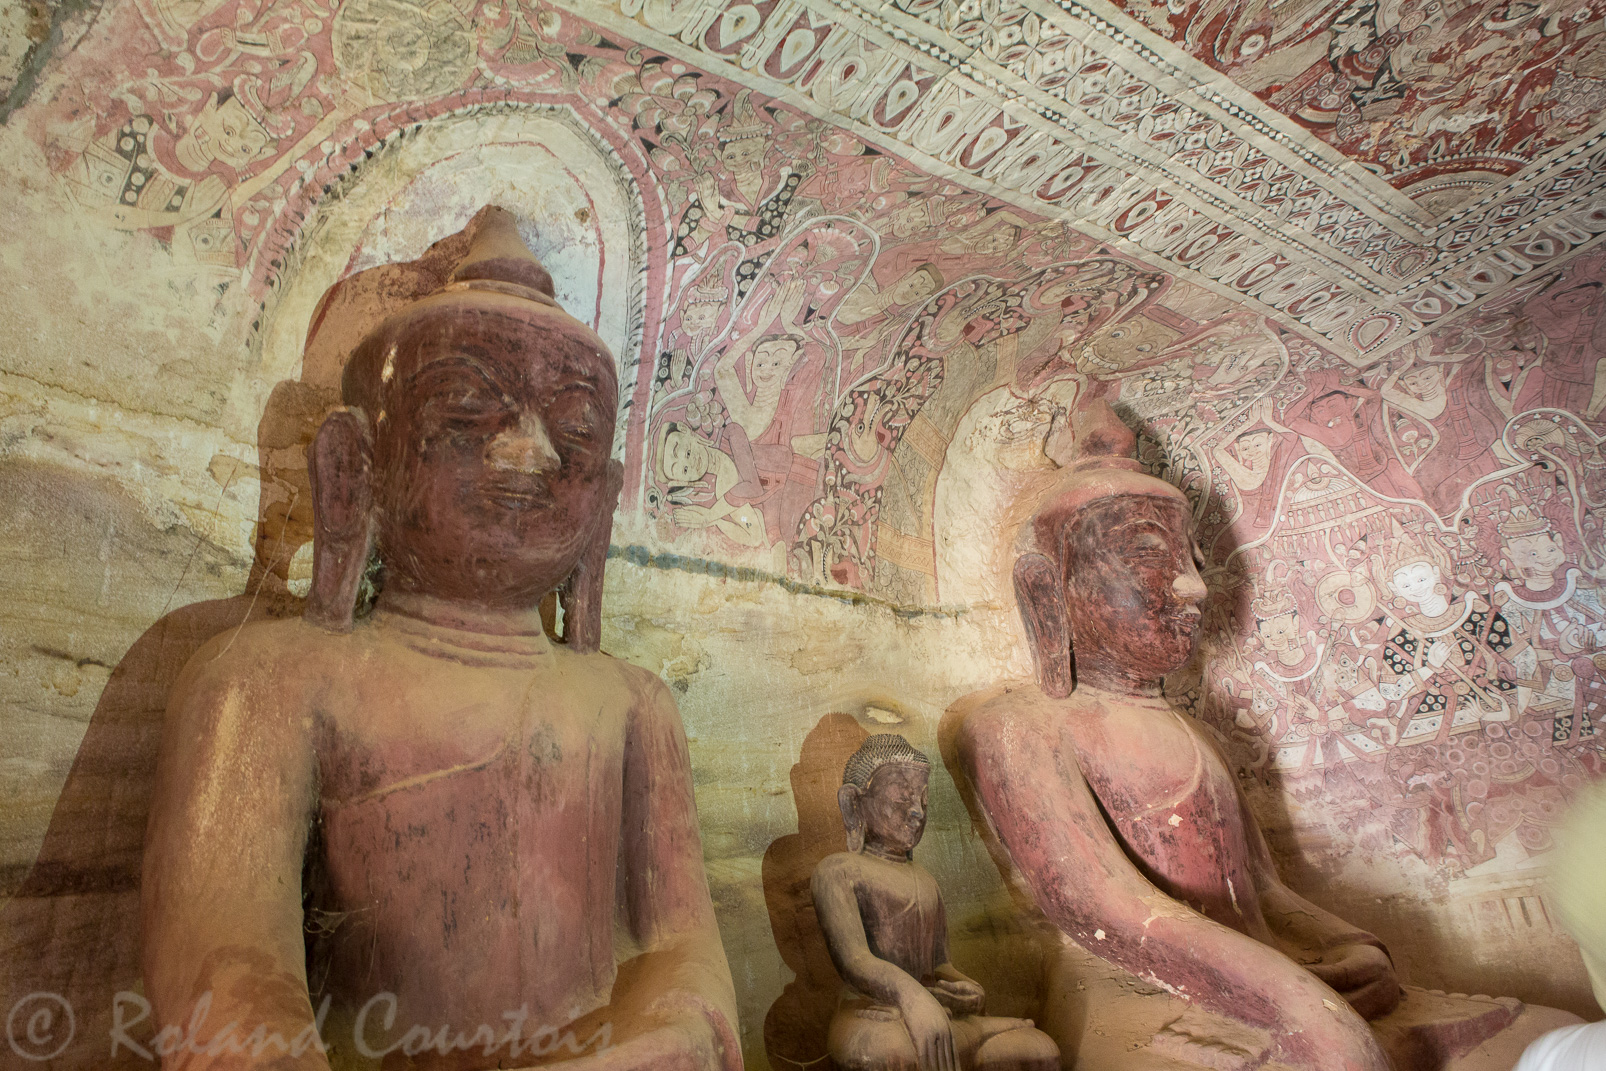 Les grottes de Hpowintaung contiennent  de magnifiques peintures, du XIVe au XVIIe siècle. De style Nyaung-yan, on n’en voit nulle part ailleurs. Elles présentent des scènes royales ou liées au Bouddhisme.